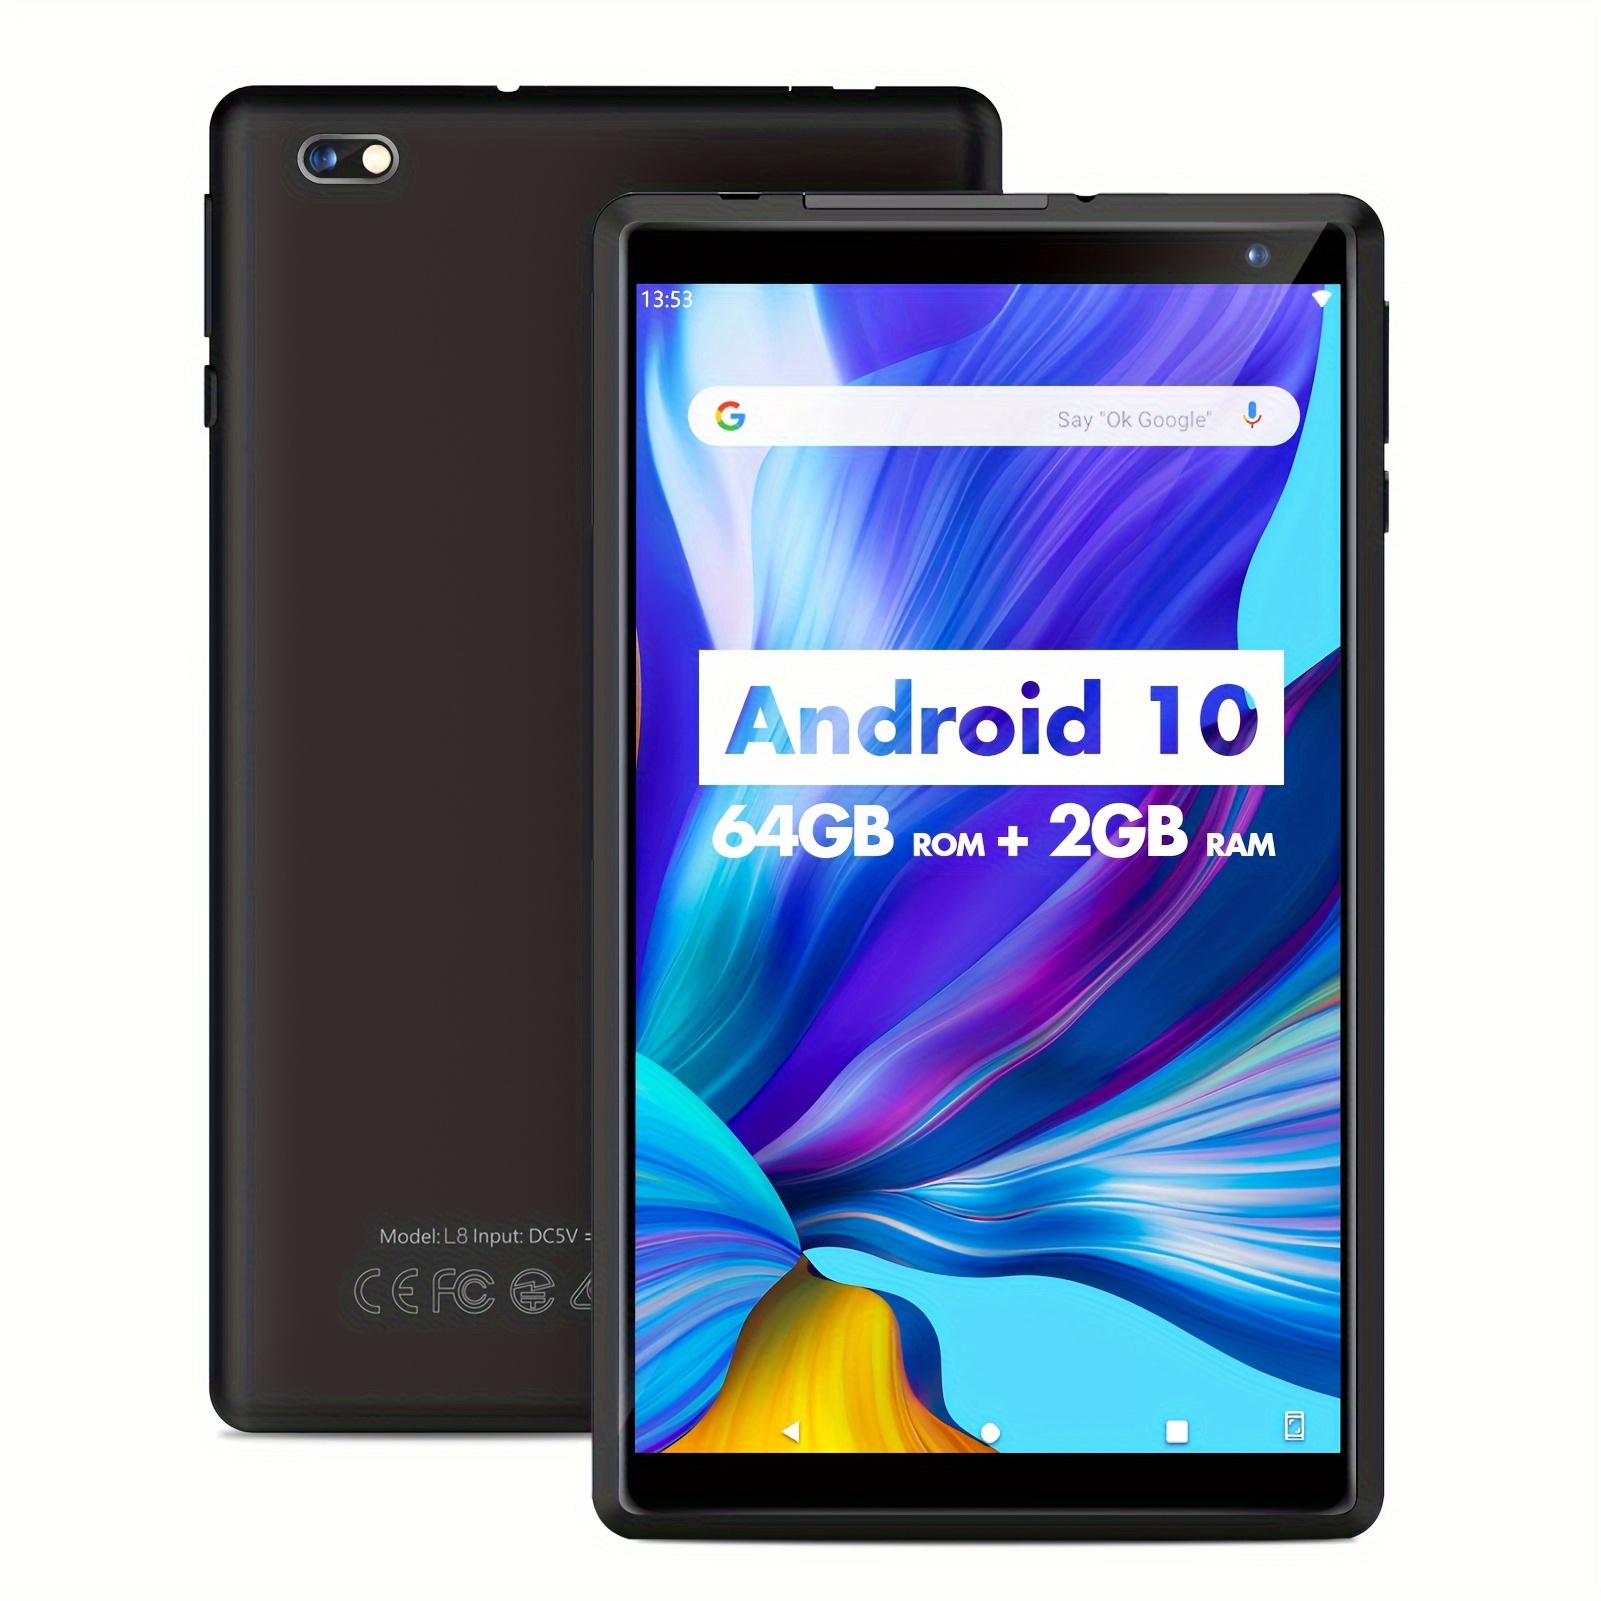  Última tableta Android 12 con 4G LTE celular, 8 GB de RAM, 128  GB ROM, 1 TB Expand, Octa Core, pantalla IPS FHD de 10.1 pulgadas 1920 x  1200, batería de